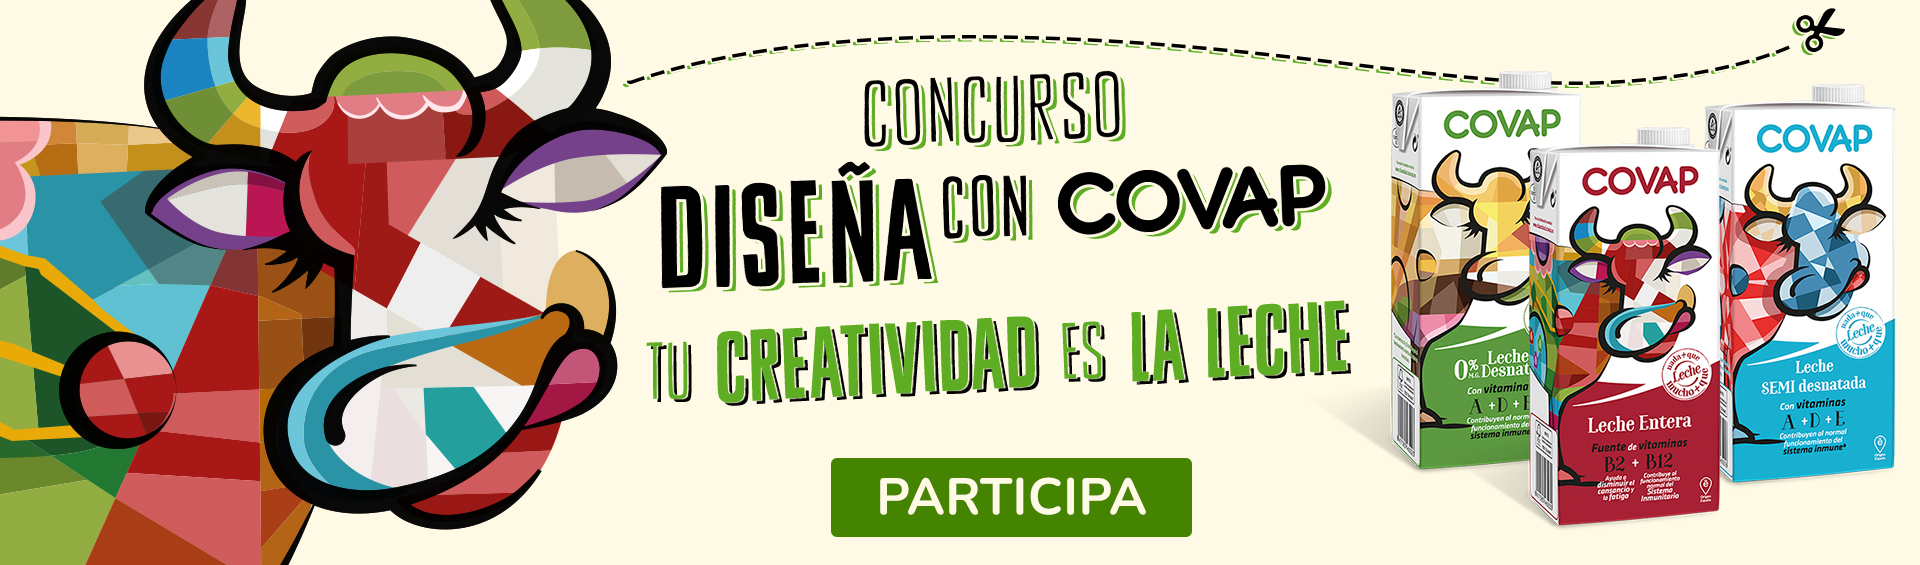 Concurso Diseña con COVAP | COVAP